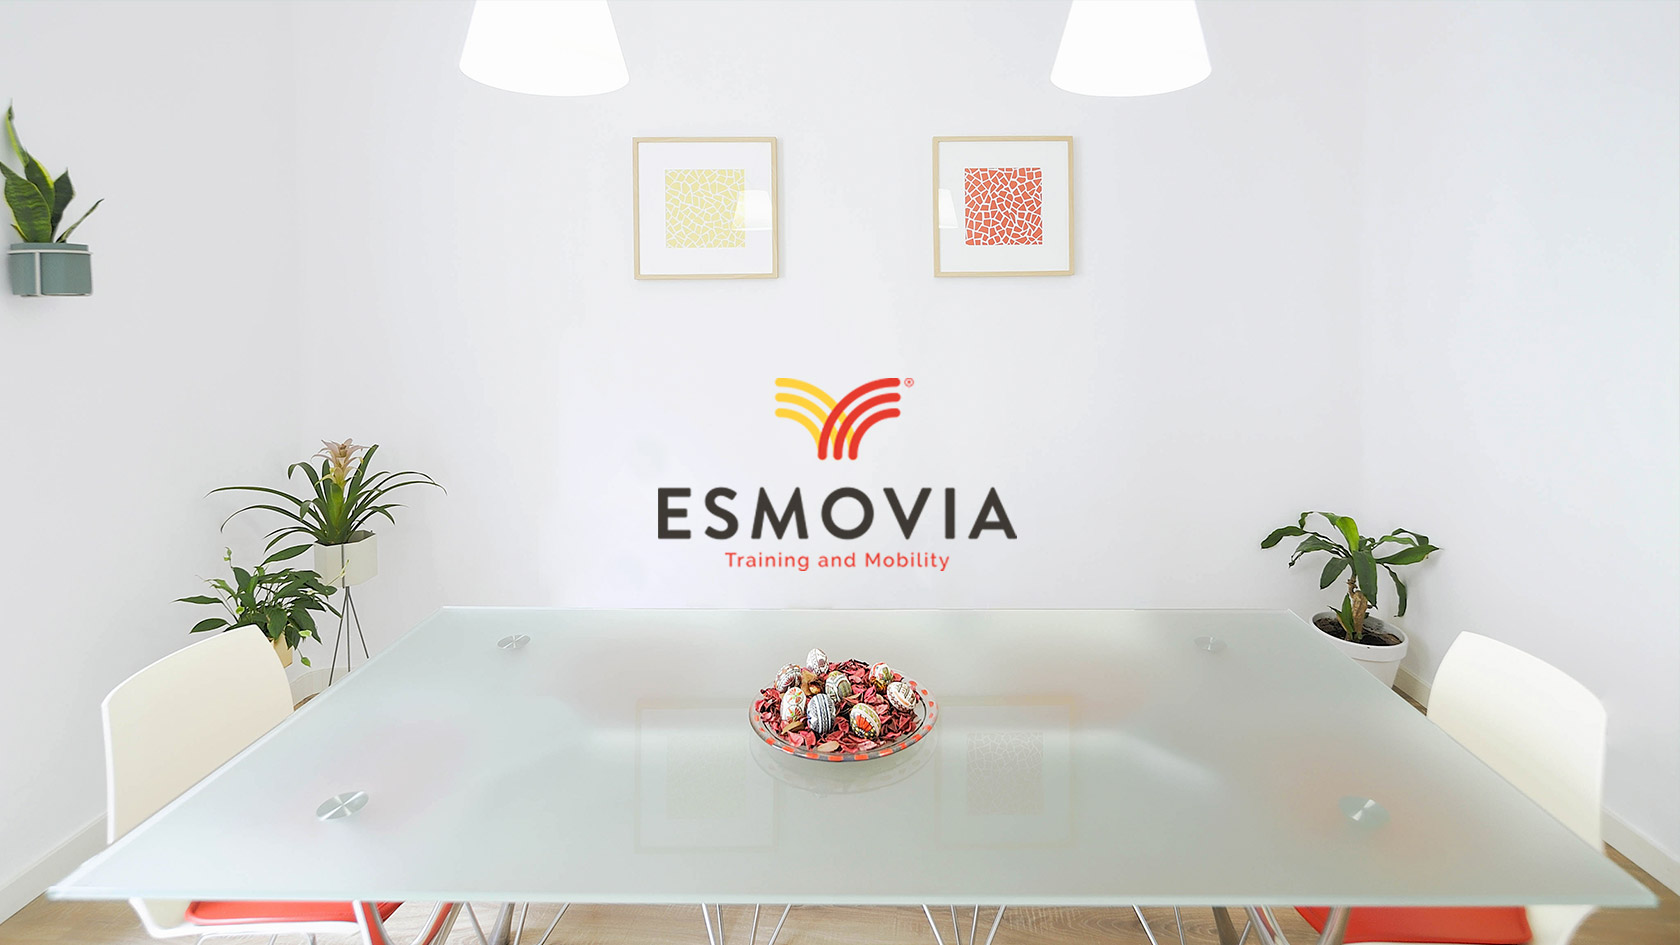 Diseño de interiores oficinas ESMOVIA - Diseño de interiores - Diseño de espacios - Diseño de interior - Estudio de diseño gráfico Valencia Pixelarte